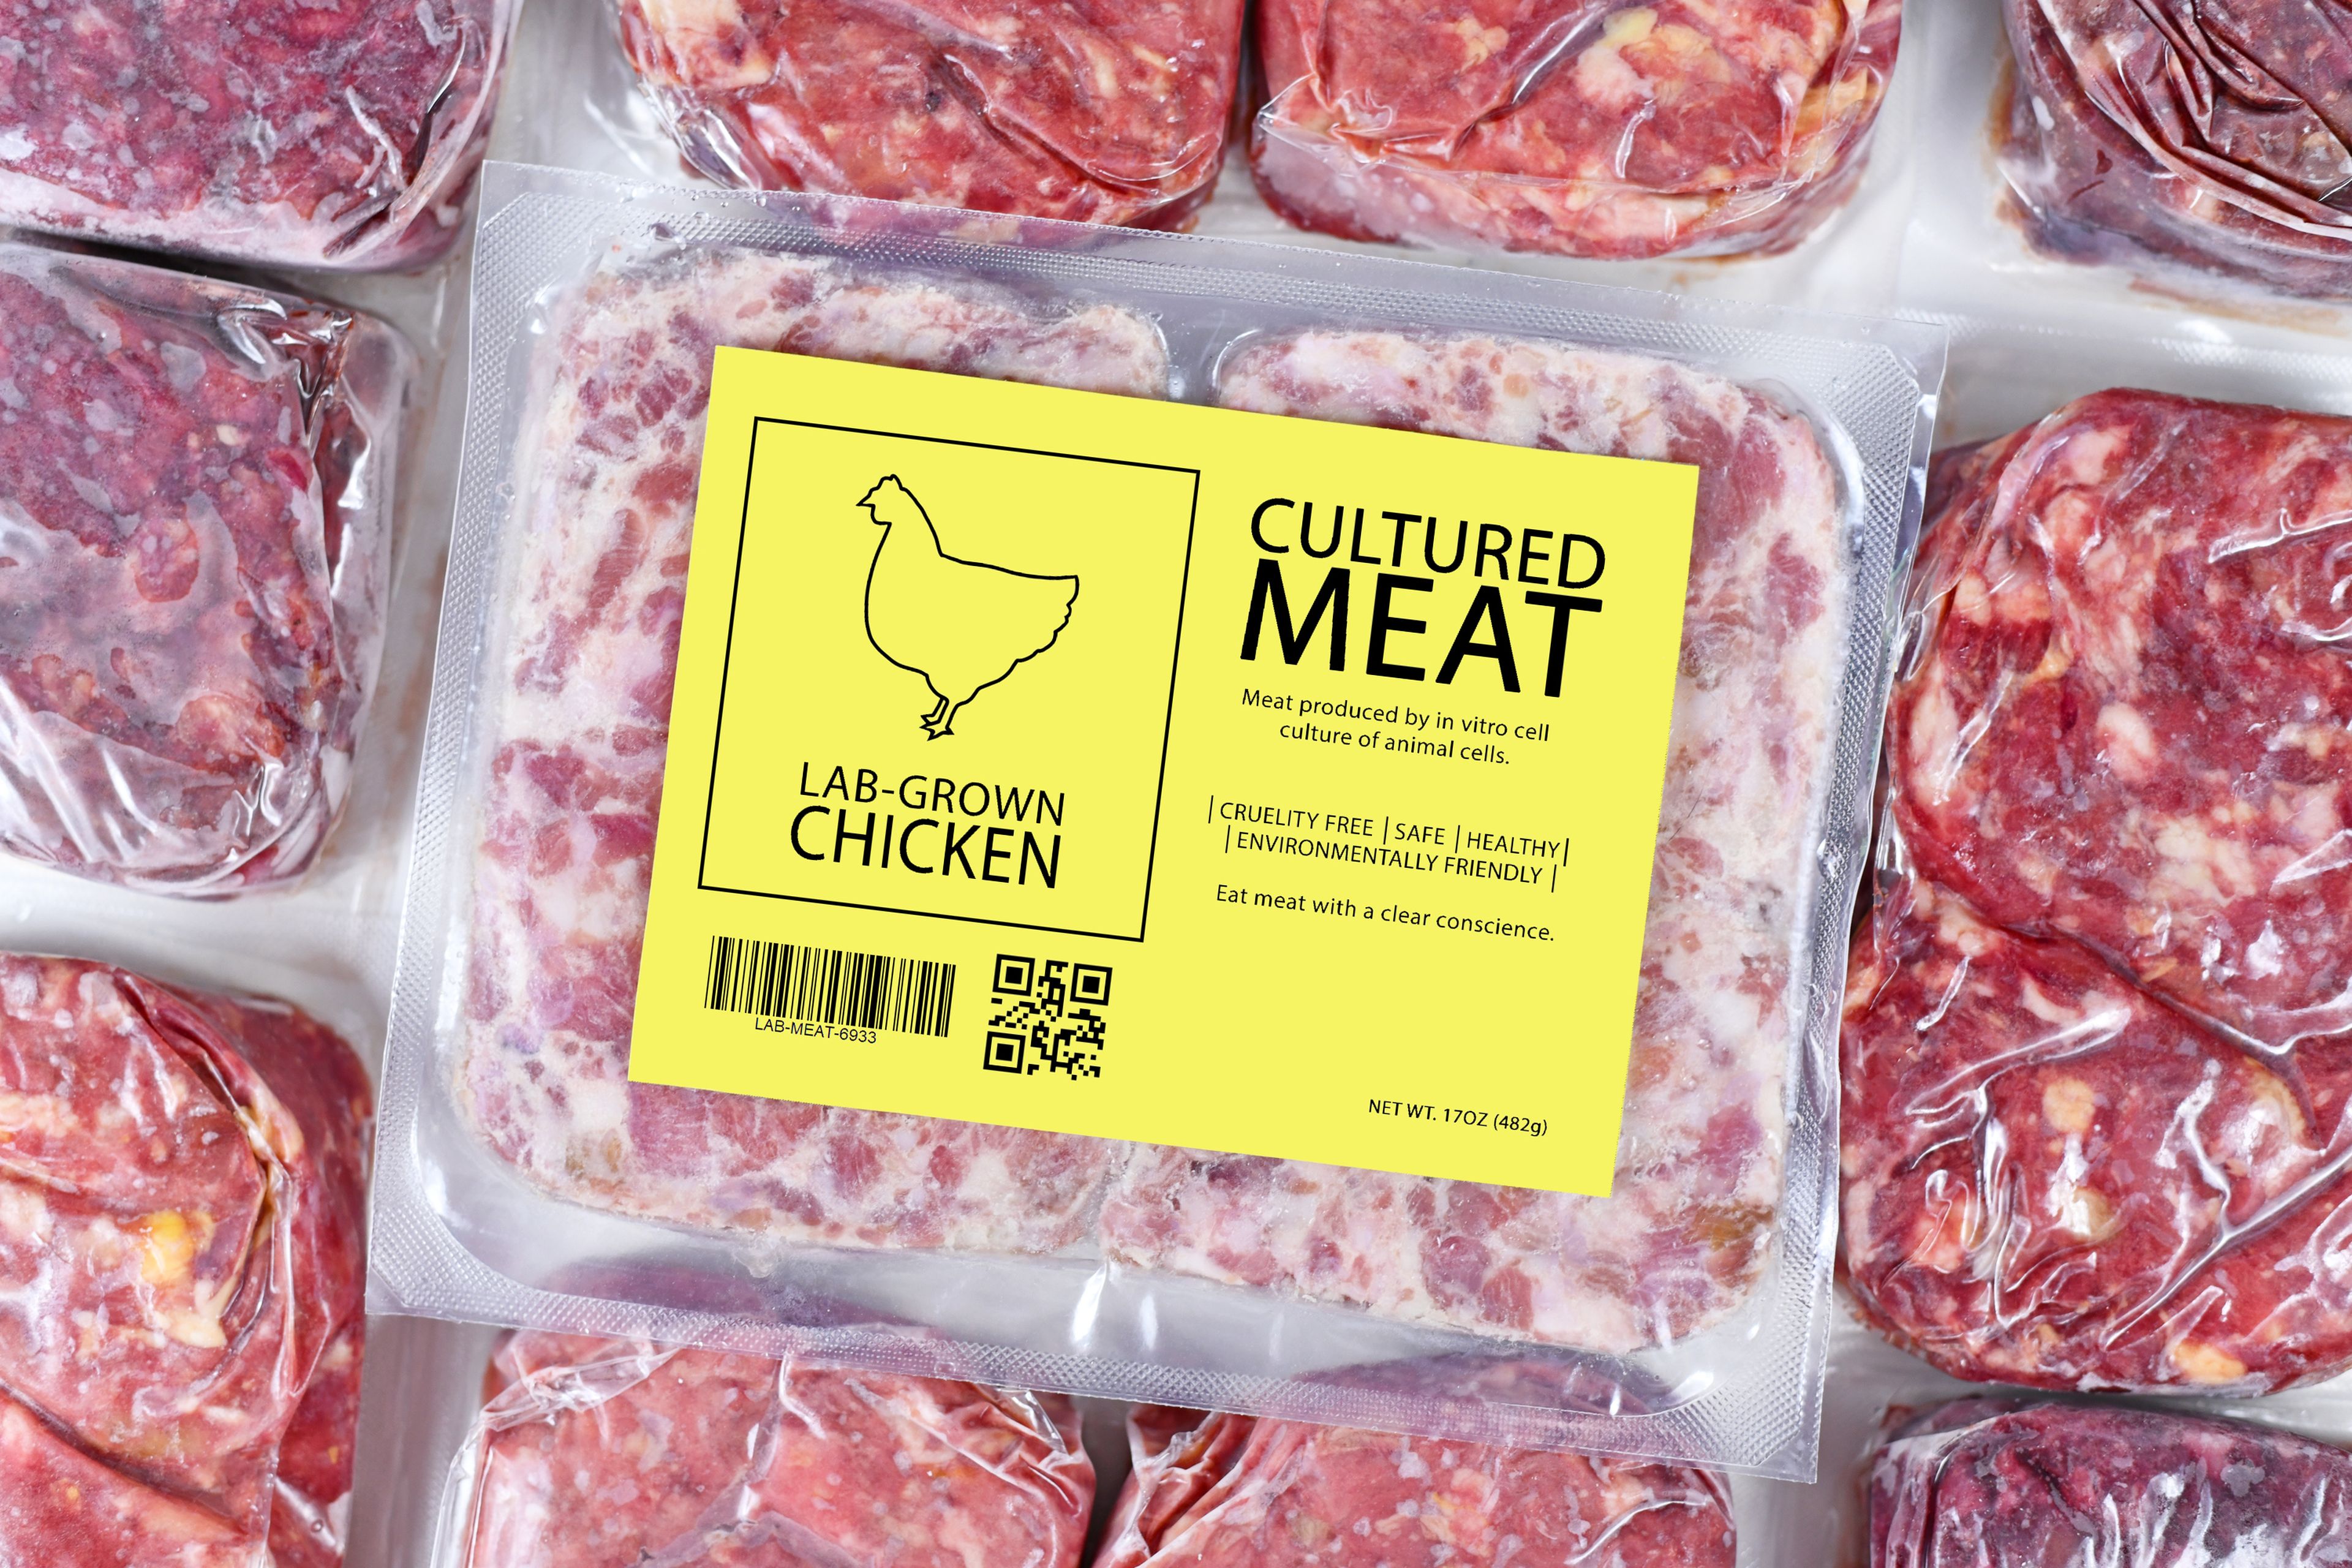 Uno de los principales retos de la carne cultivada es la escalabilidad para poder democratizar precios y llegar de forma competitiva al consumidor.